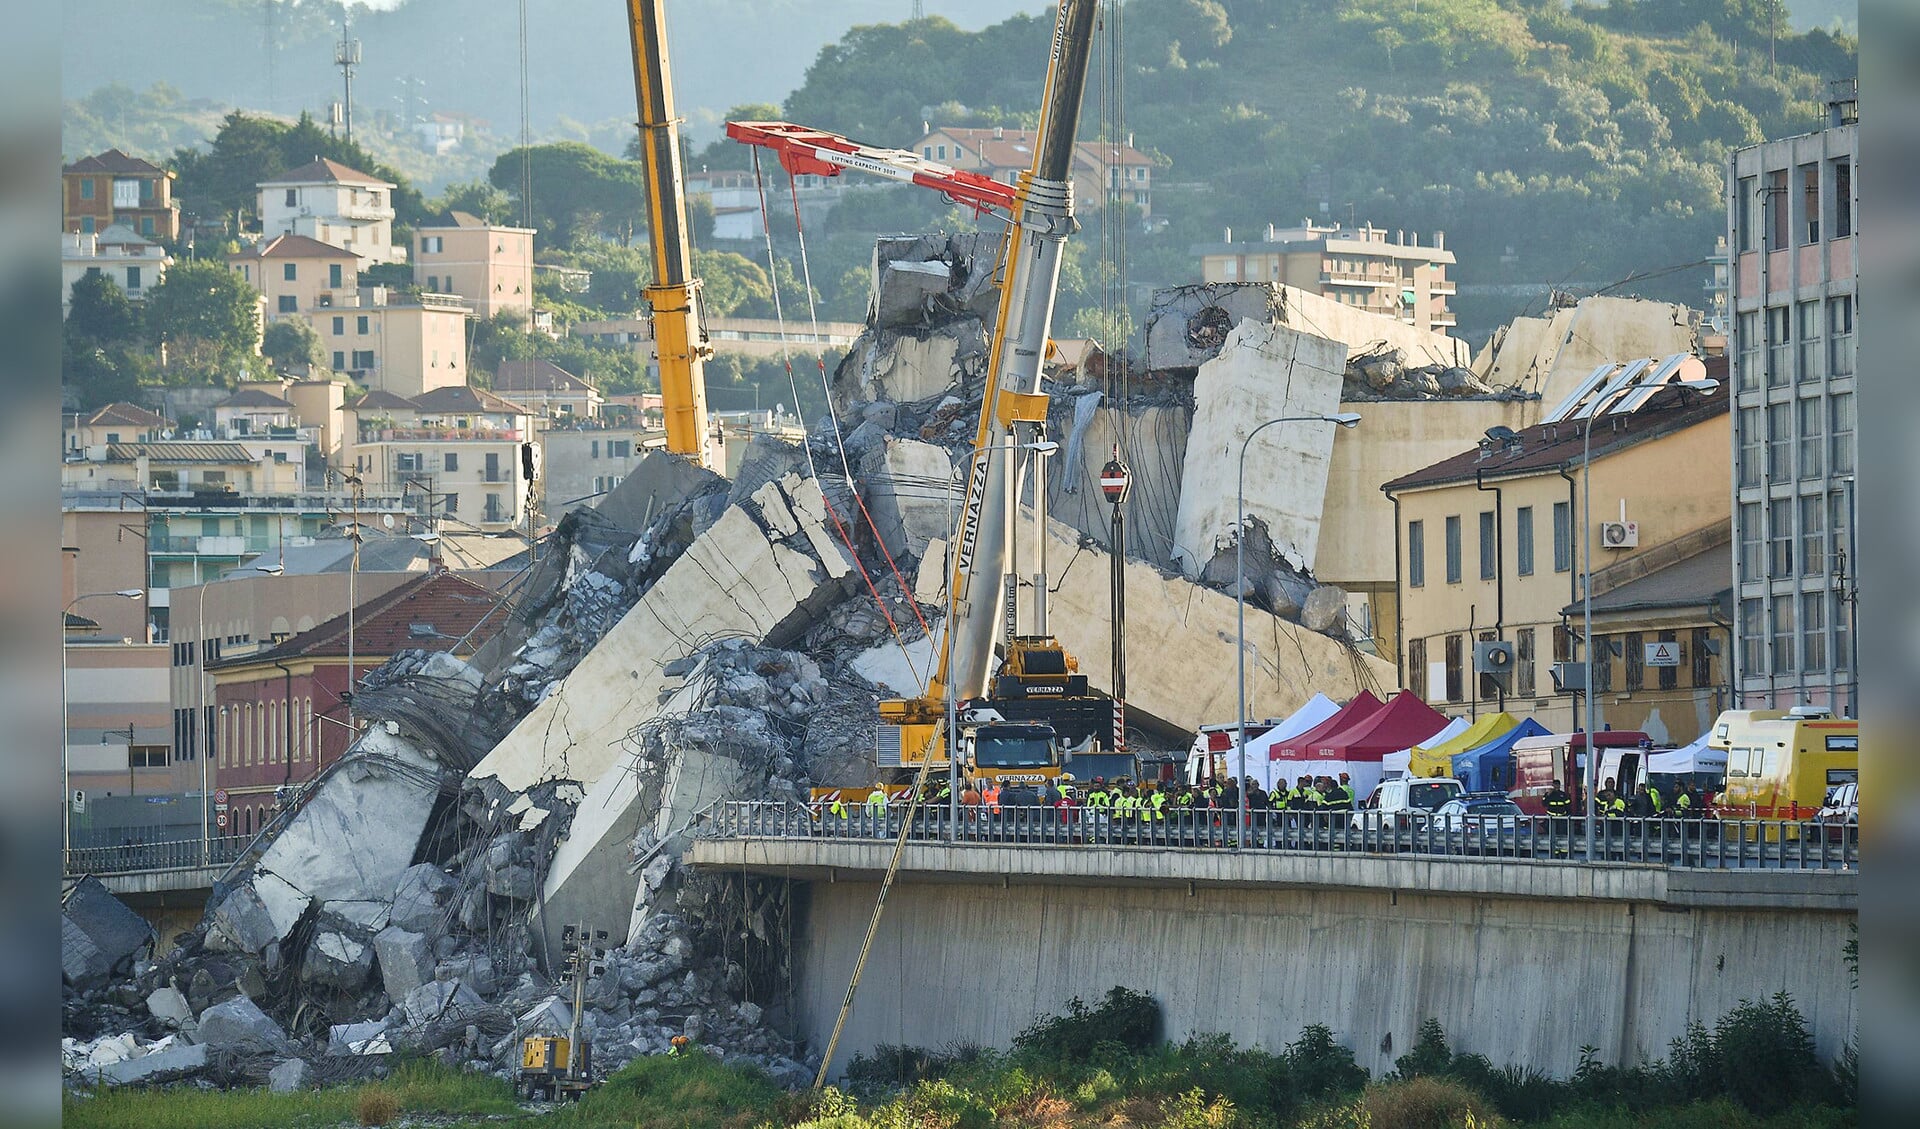 Nog steeds wordt onder het puin van de Morandi-rampbrug in Genua gezocht naar slachtoffers. De vrees is groot dat het dodental, nu al 39, verder zal oplopen. Door instortingsgevaar is het reddingswerk gedeeltelijk stopgezet.